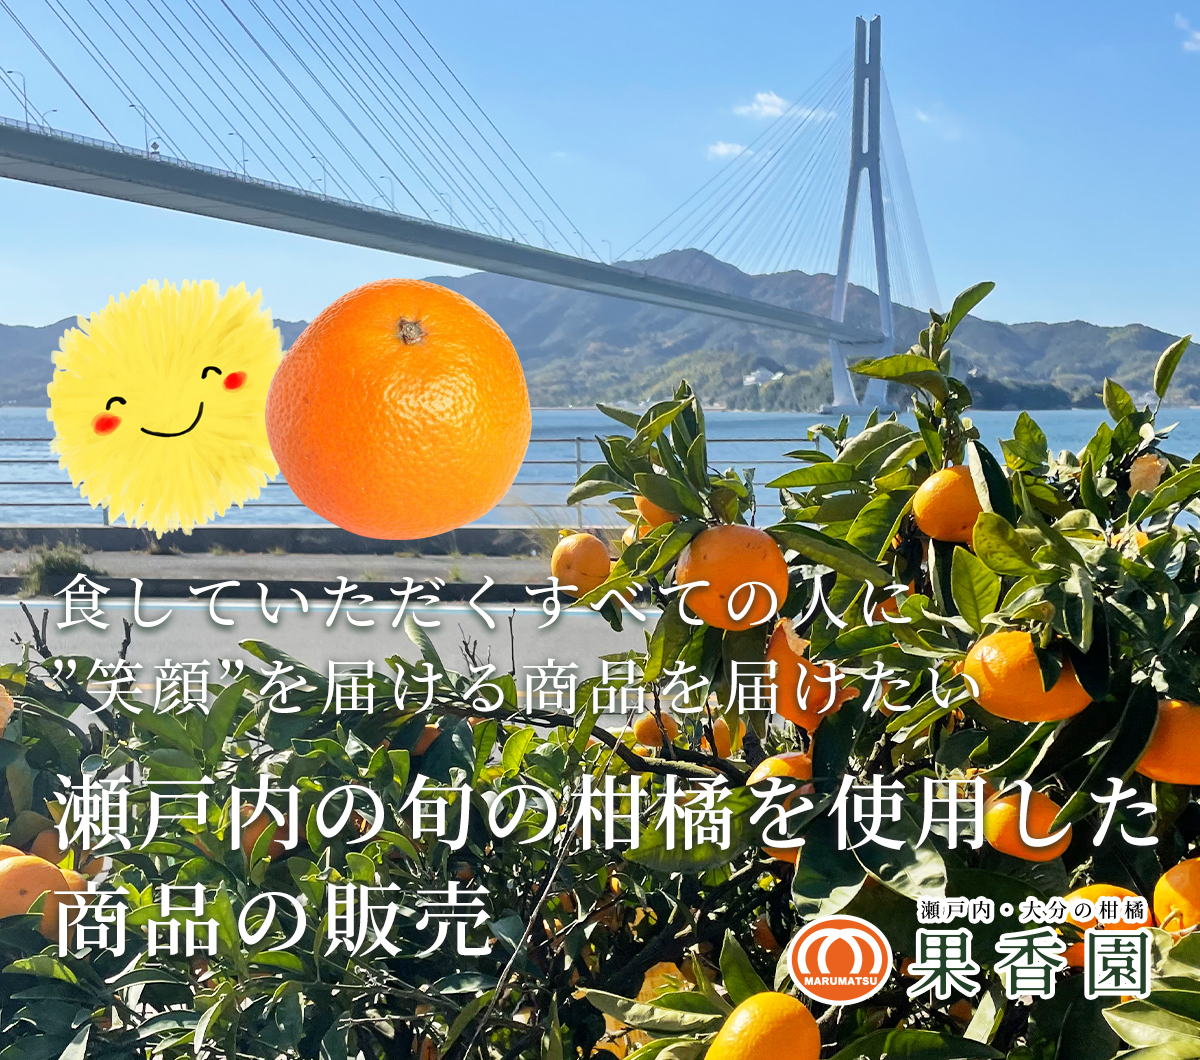 食していただく全ての人に笑顔を届けたい。瀬戸内の旬の柑橘を使用した商品の販売「果香園」